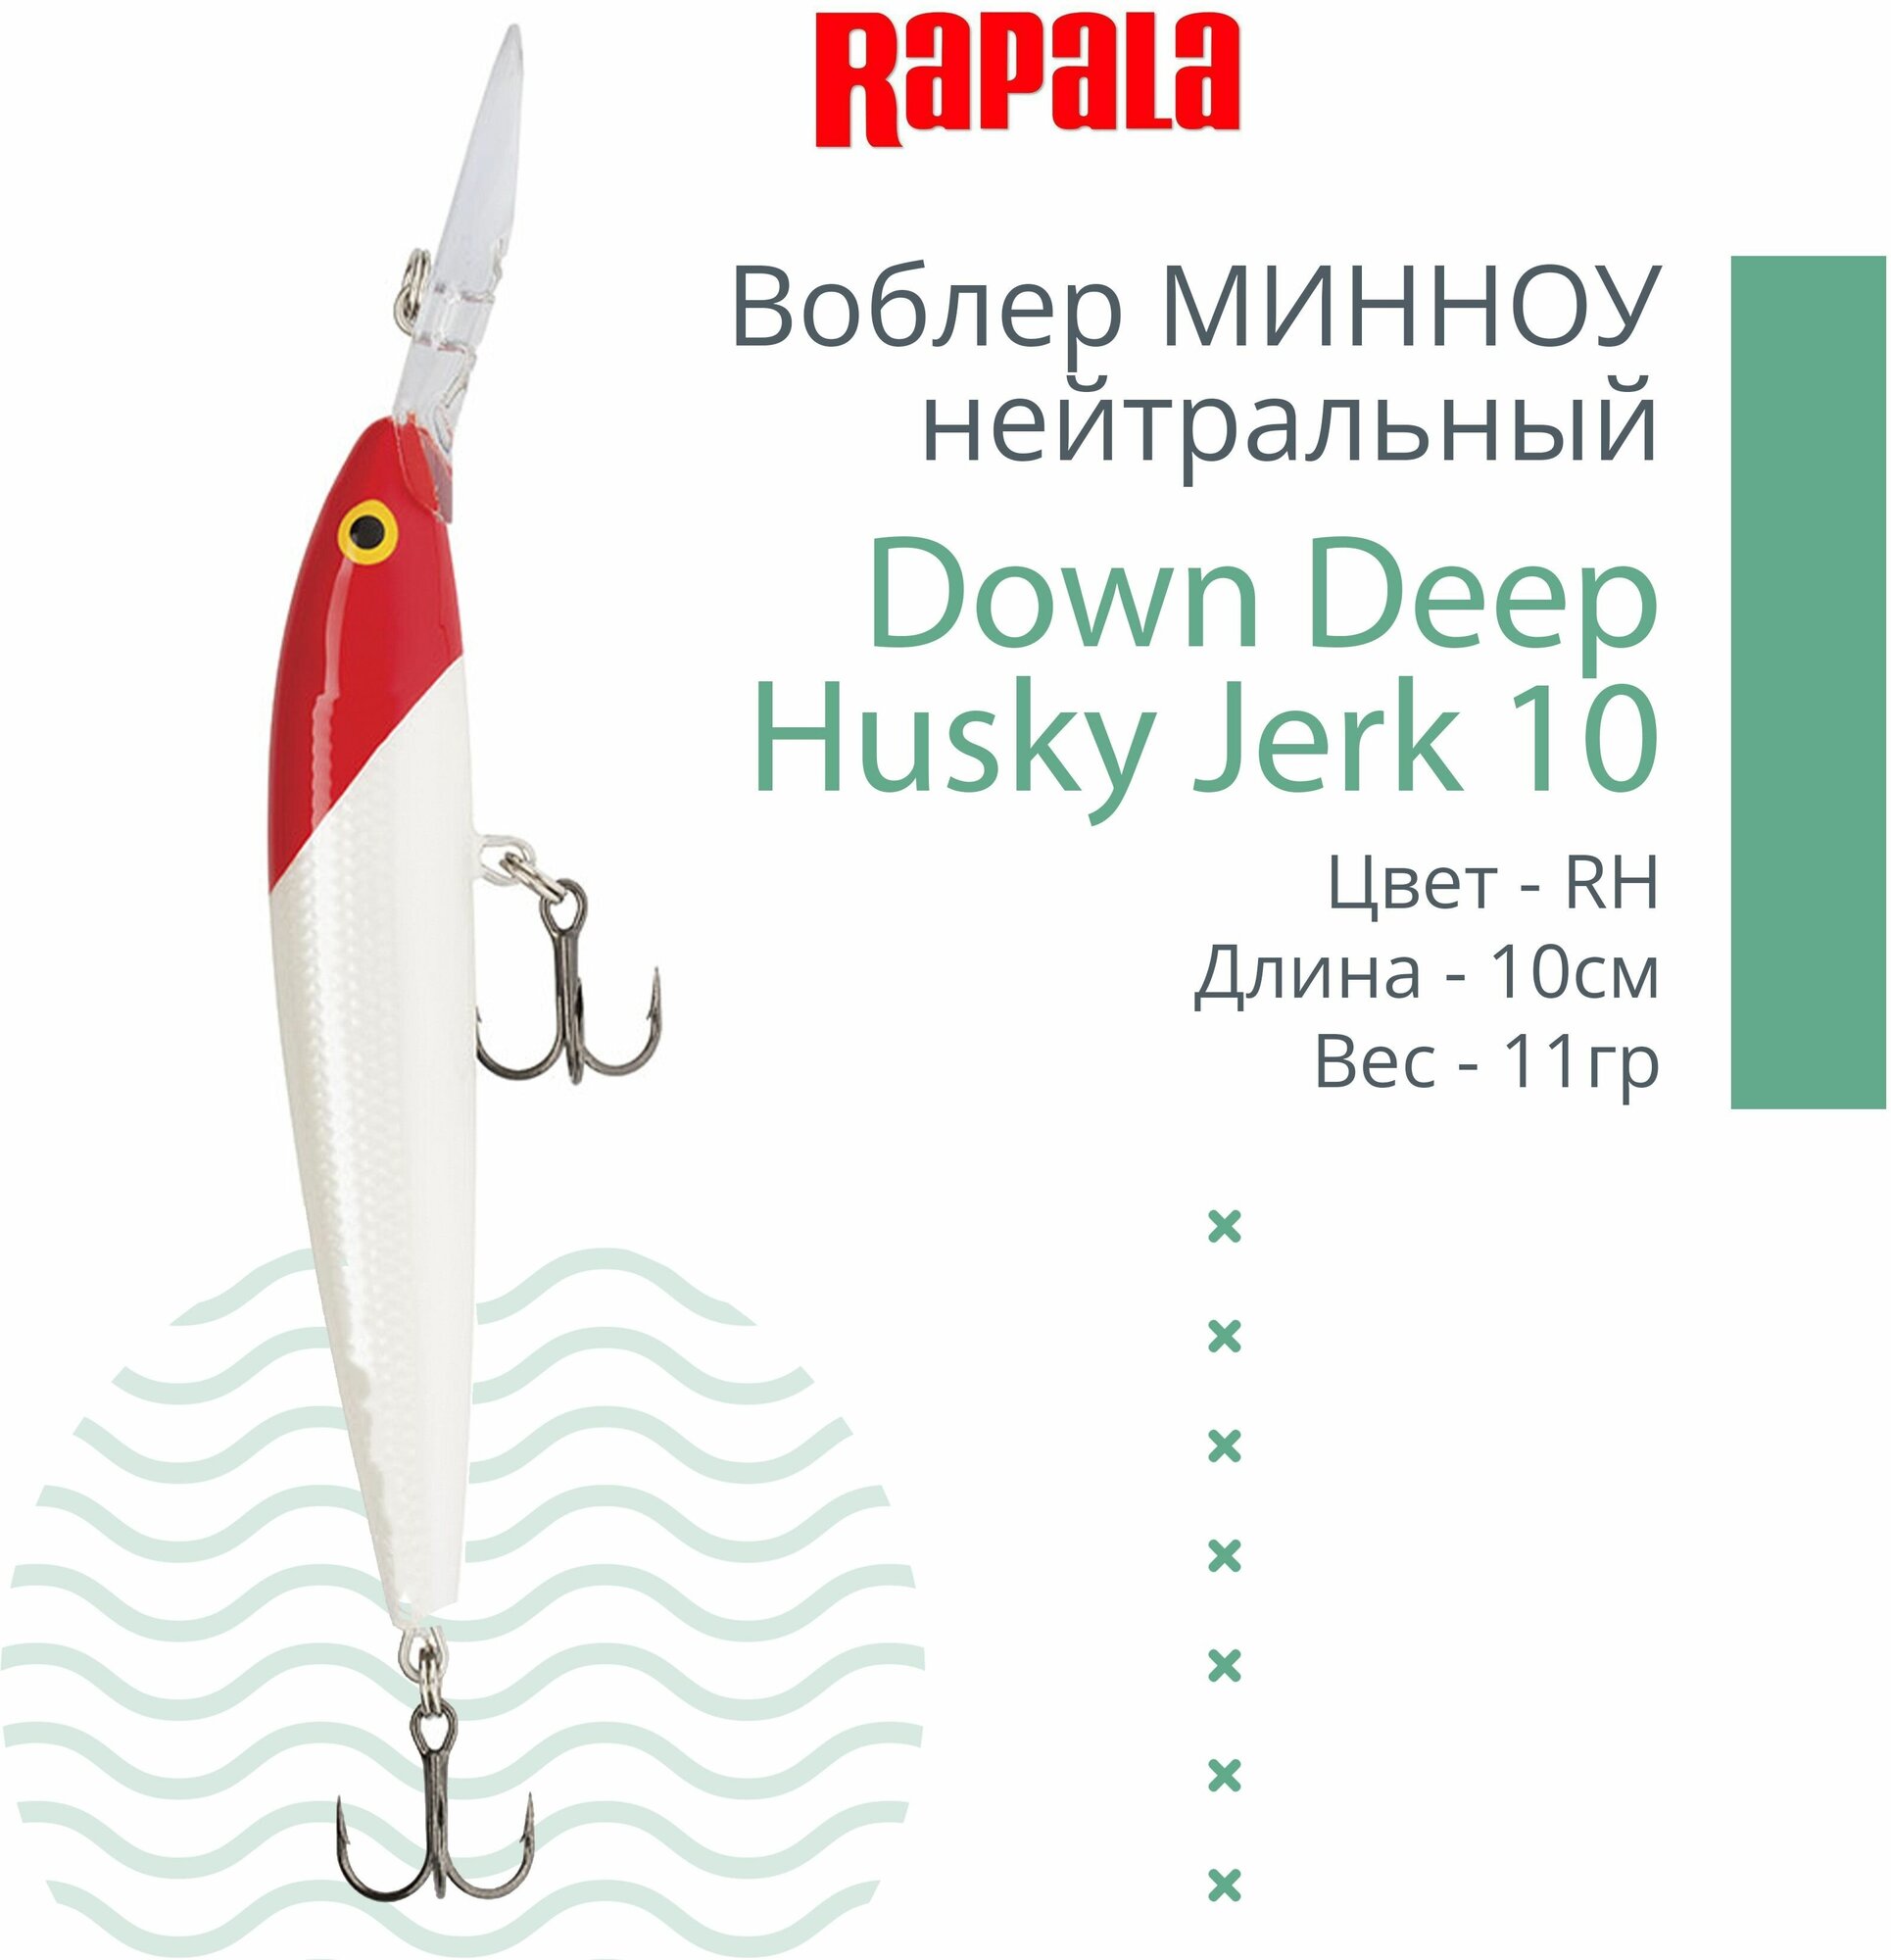 Воблер для рыбалки RAPALA Down Deep Husky Jerk 10, 10см, 11гр, цвет RH, нейтральный